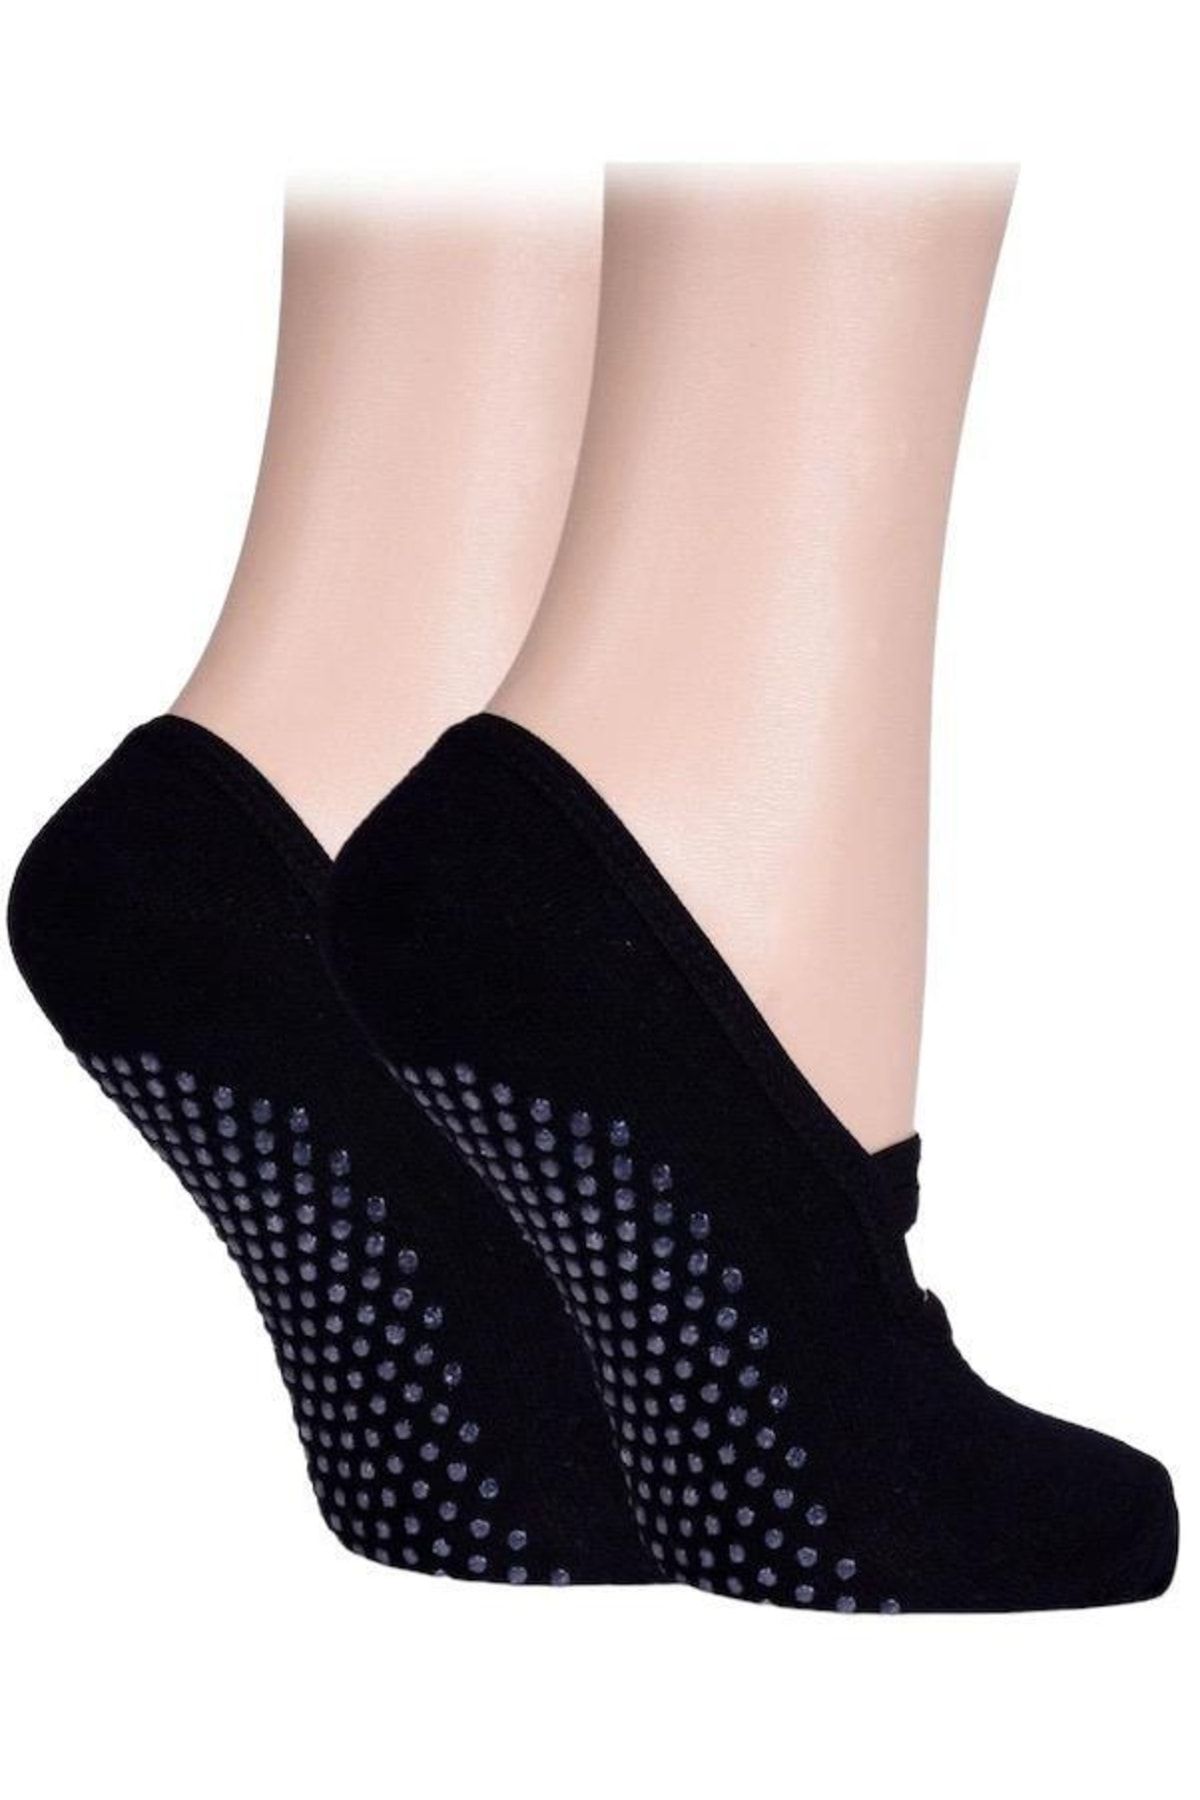 REMEGE Yoga Çorabı - Yoga Kemeri Ikili Set / Kaydırmaz Pilates Çorap Dans  Yoga Çorabı + Yoga Kemeri Fiyatı, Yorumları - Trendyol